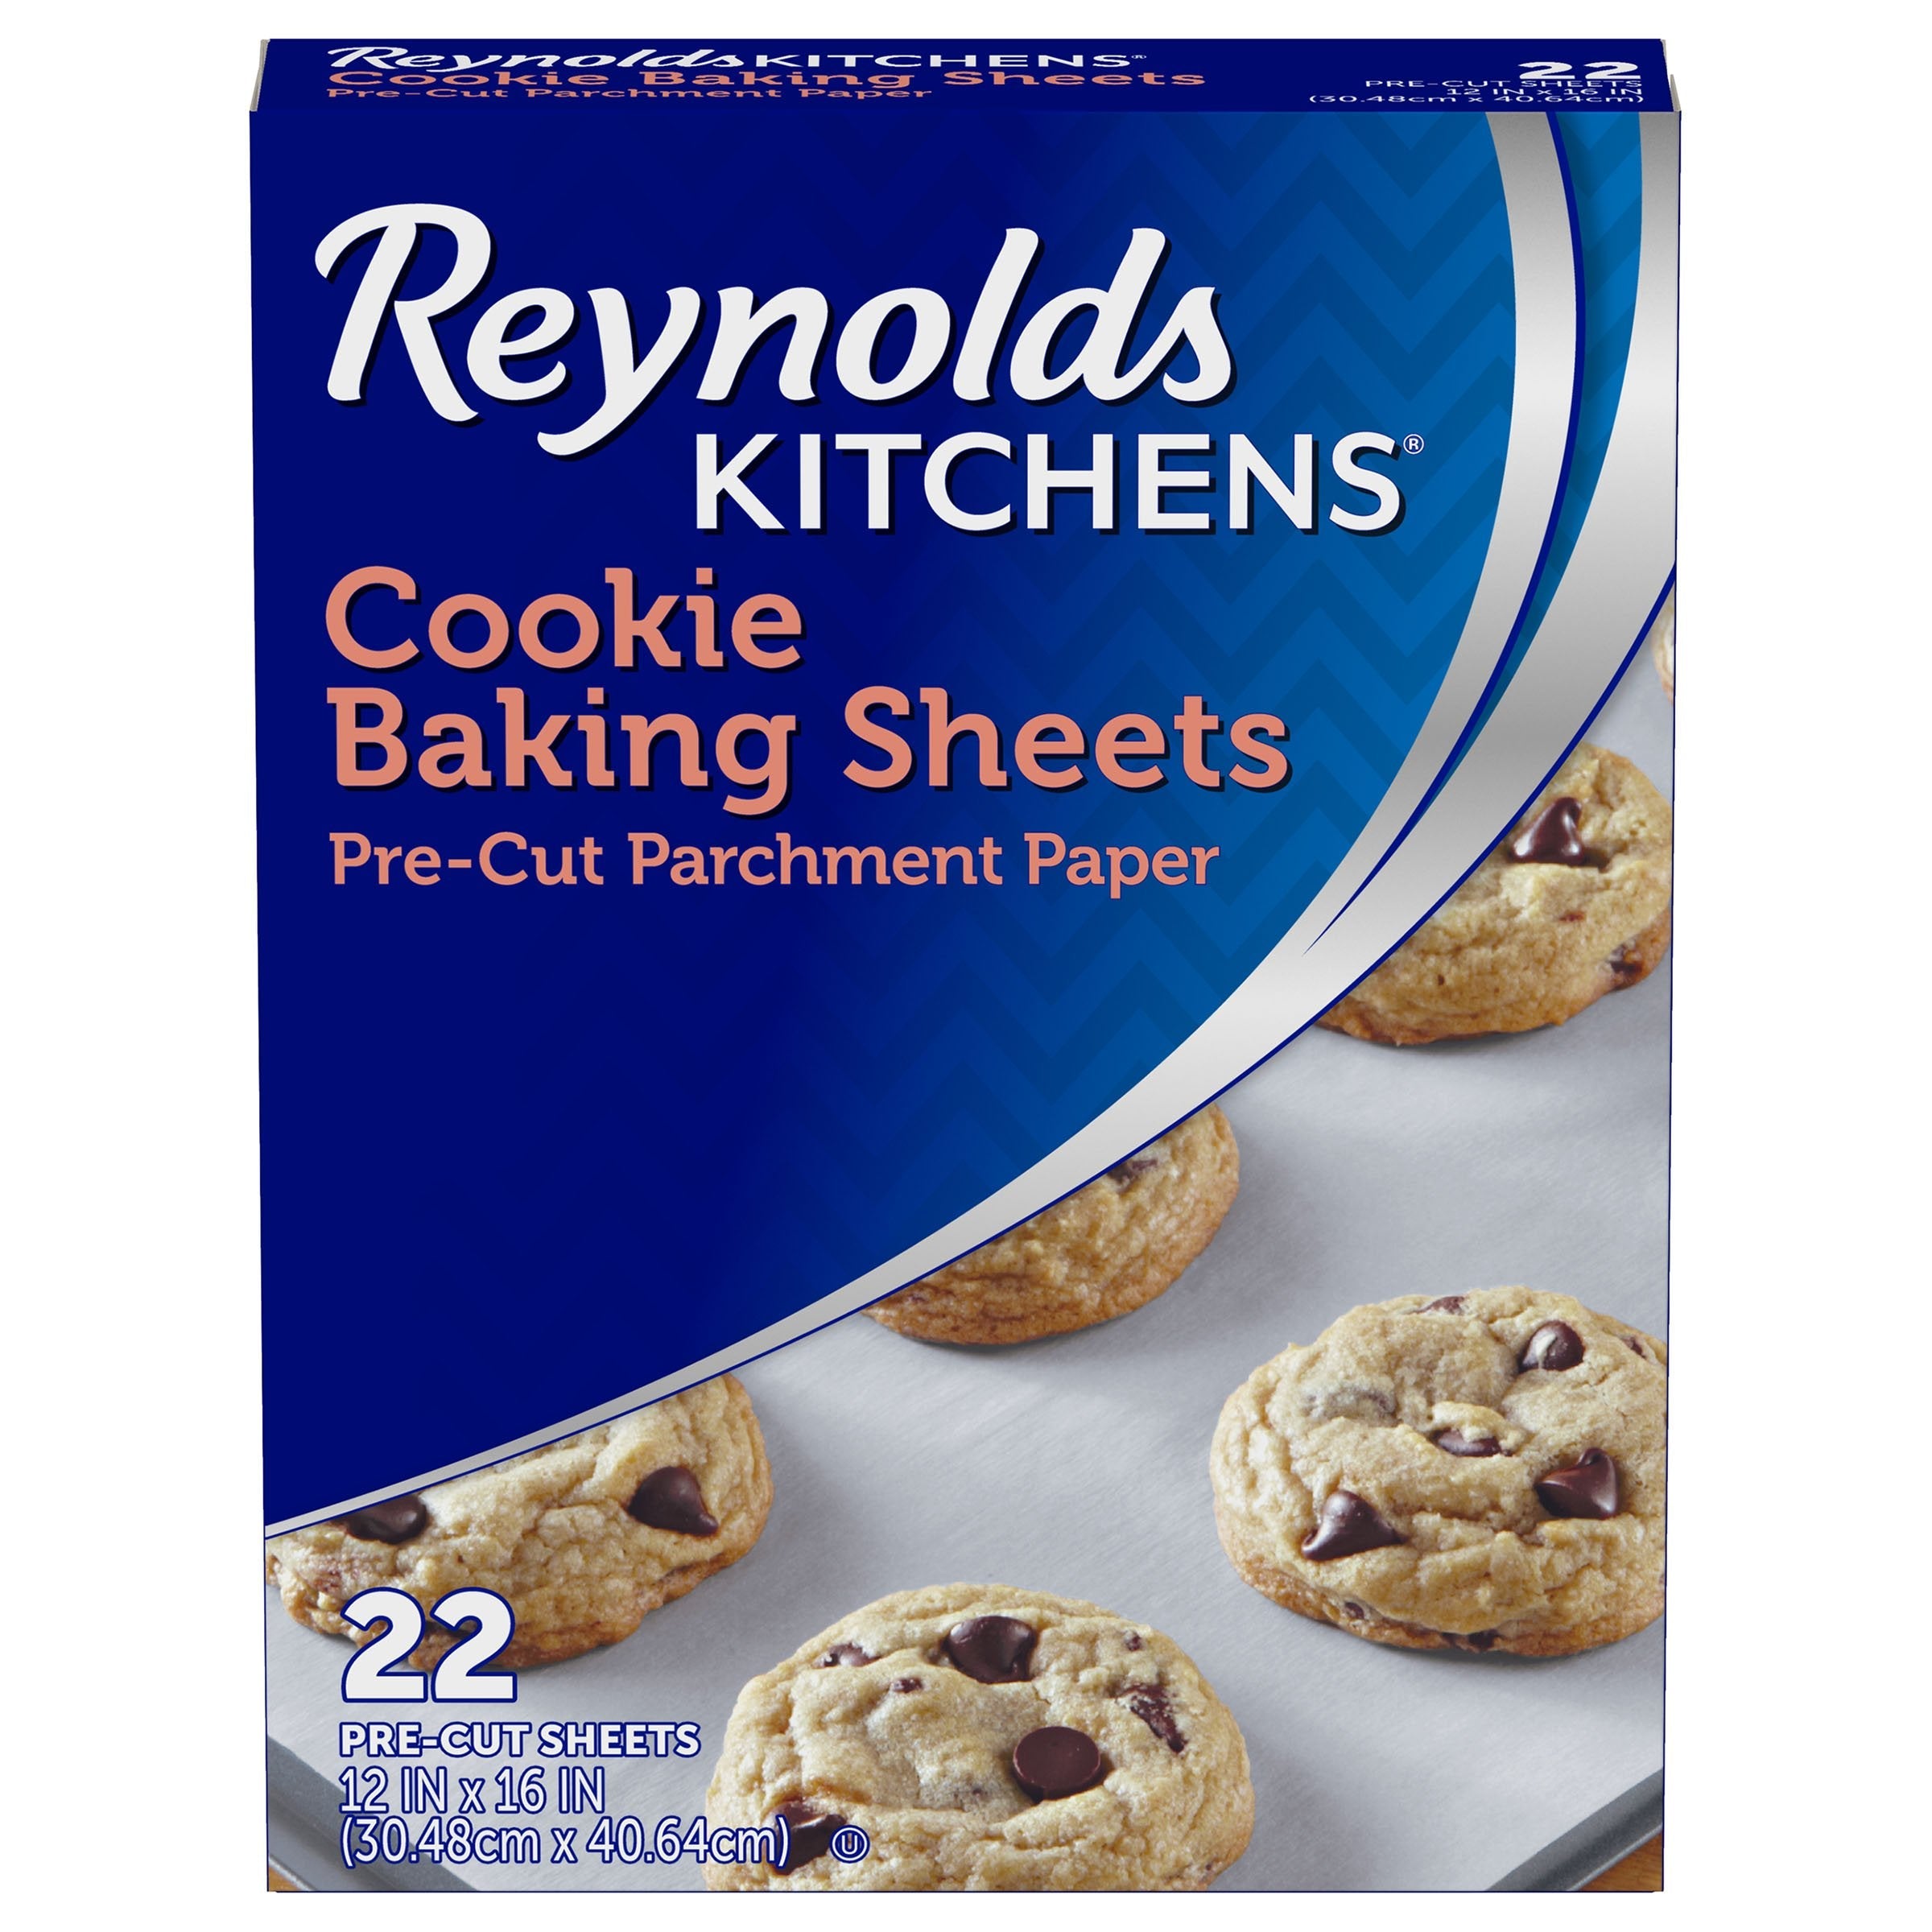 Reynolds Kitchens Parchment Paper Sheets, Non-Stick, Pre-Cut - 100 sheets